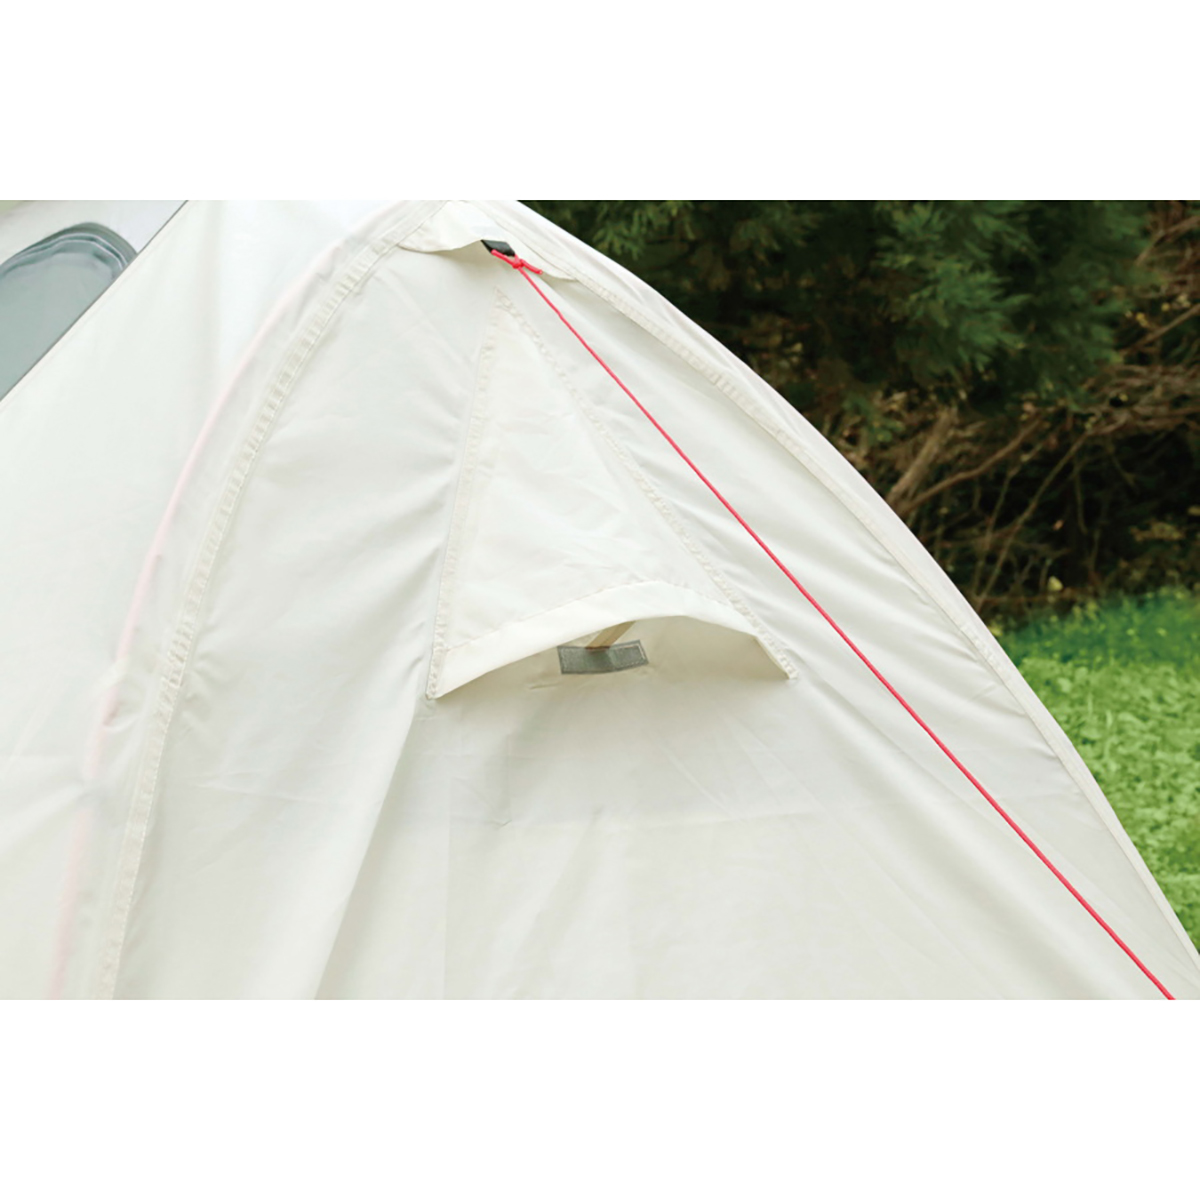 17629円 【上品】 キャプテンスタッグ CAPTAIN STAG テント ソロテント 1人用 サイズ 210×140×H110cm パッキングサイズ 39×18×1